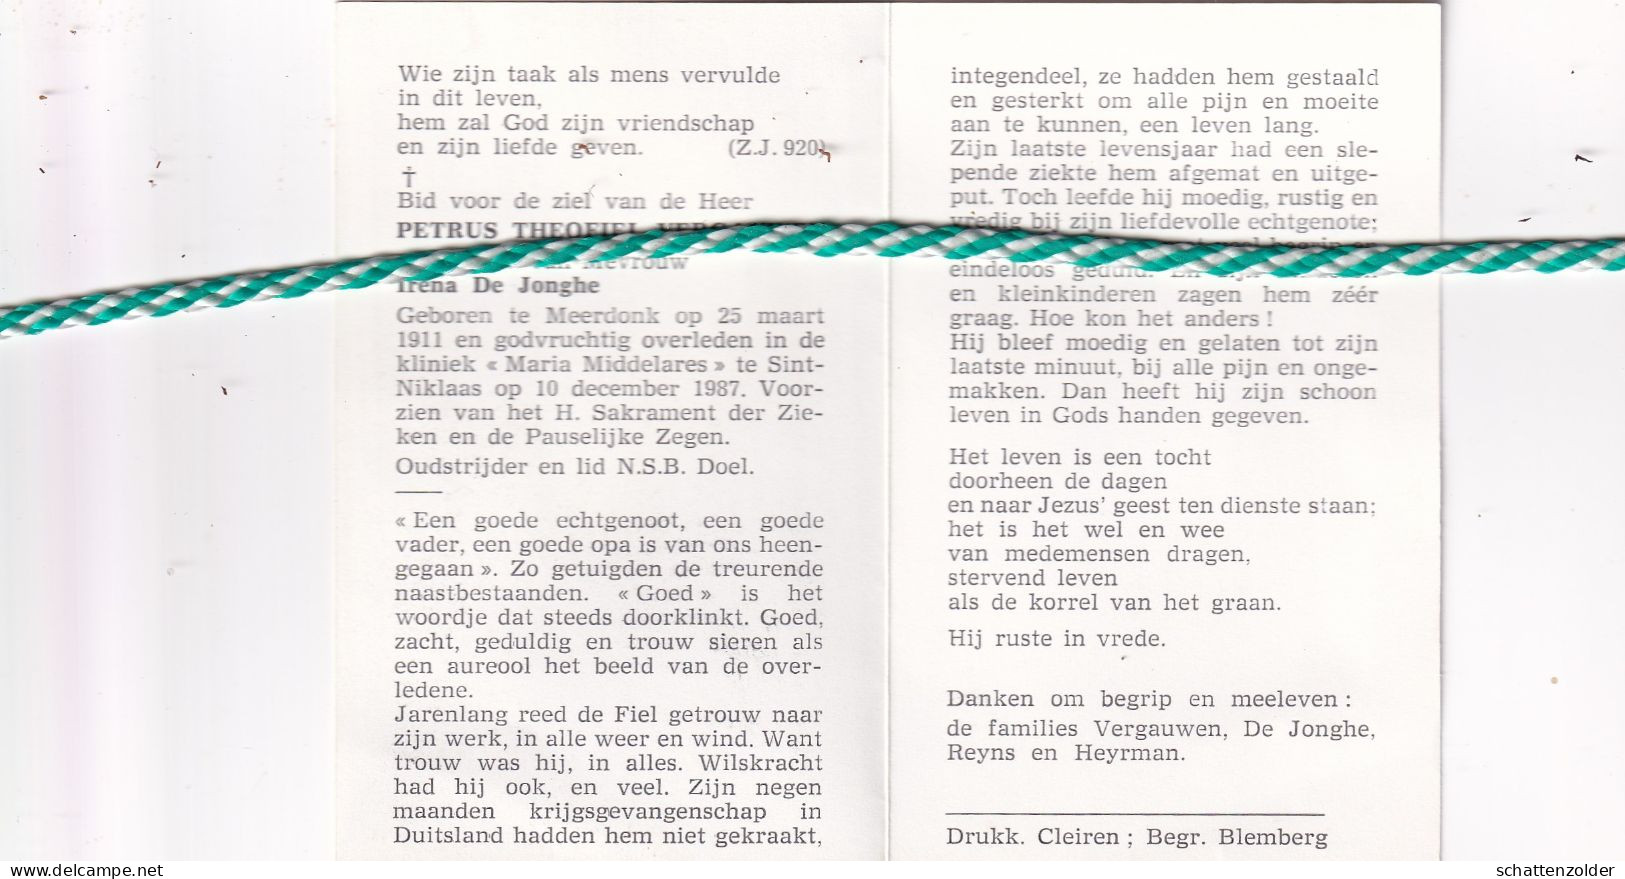 Petrus Theofiel Vergauwen-De Jonghe, Meerdonk 1911, Sint-Niklaas 1987. Oud-strijder 40-45 - Overlijden